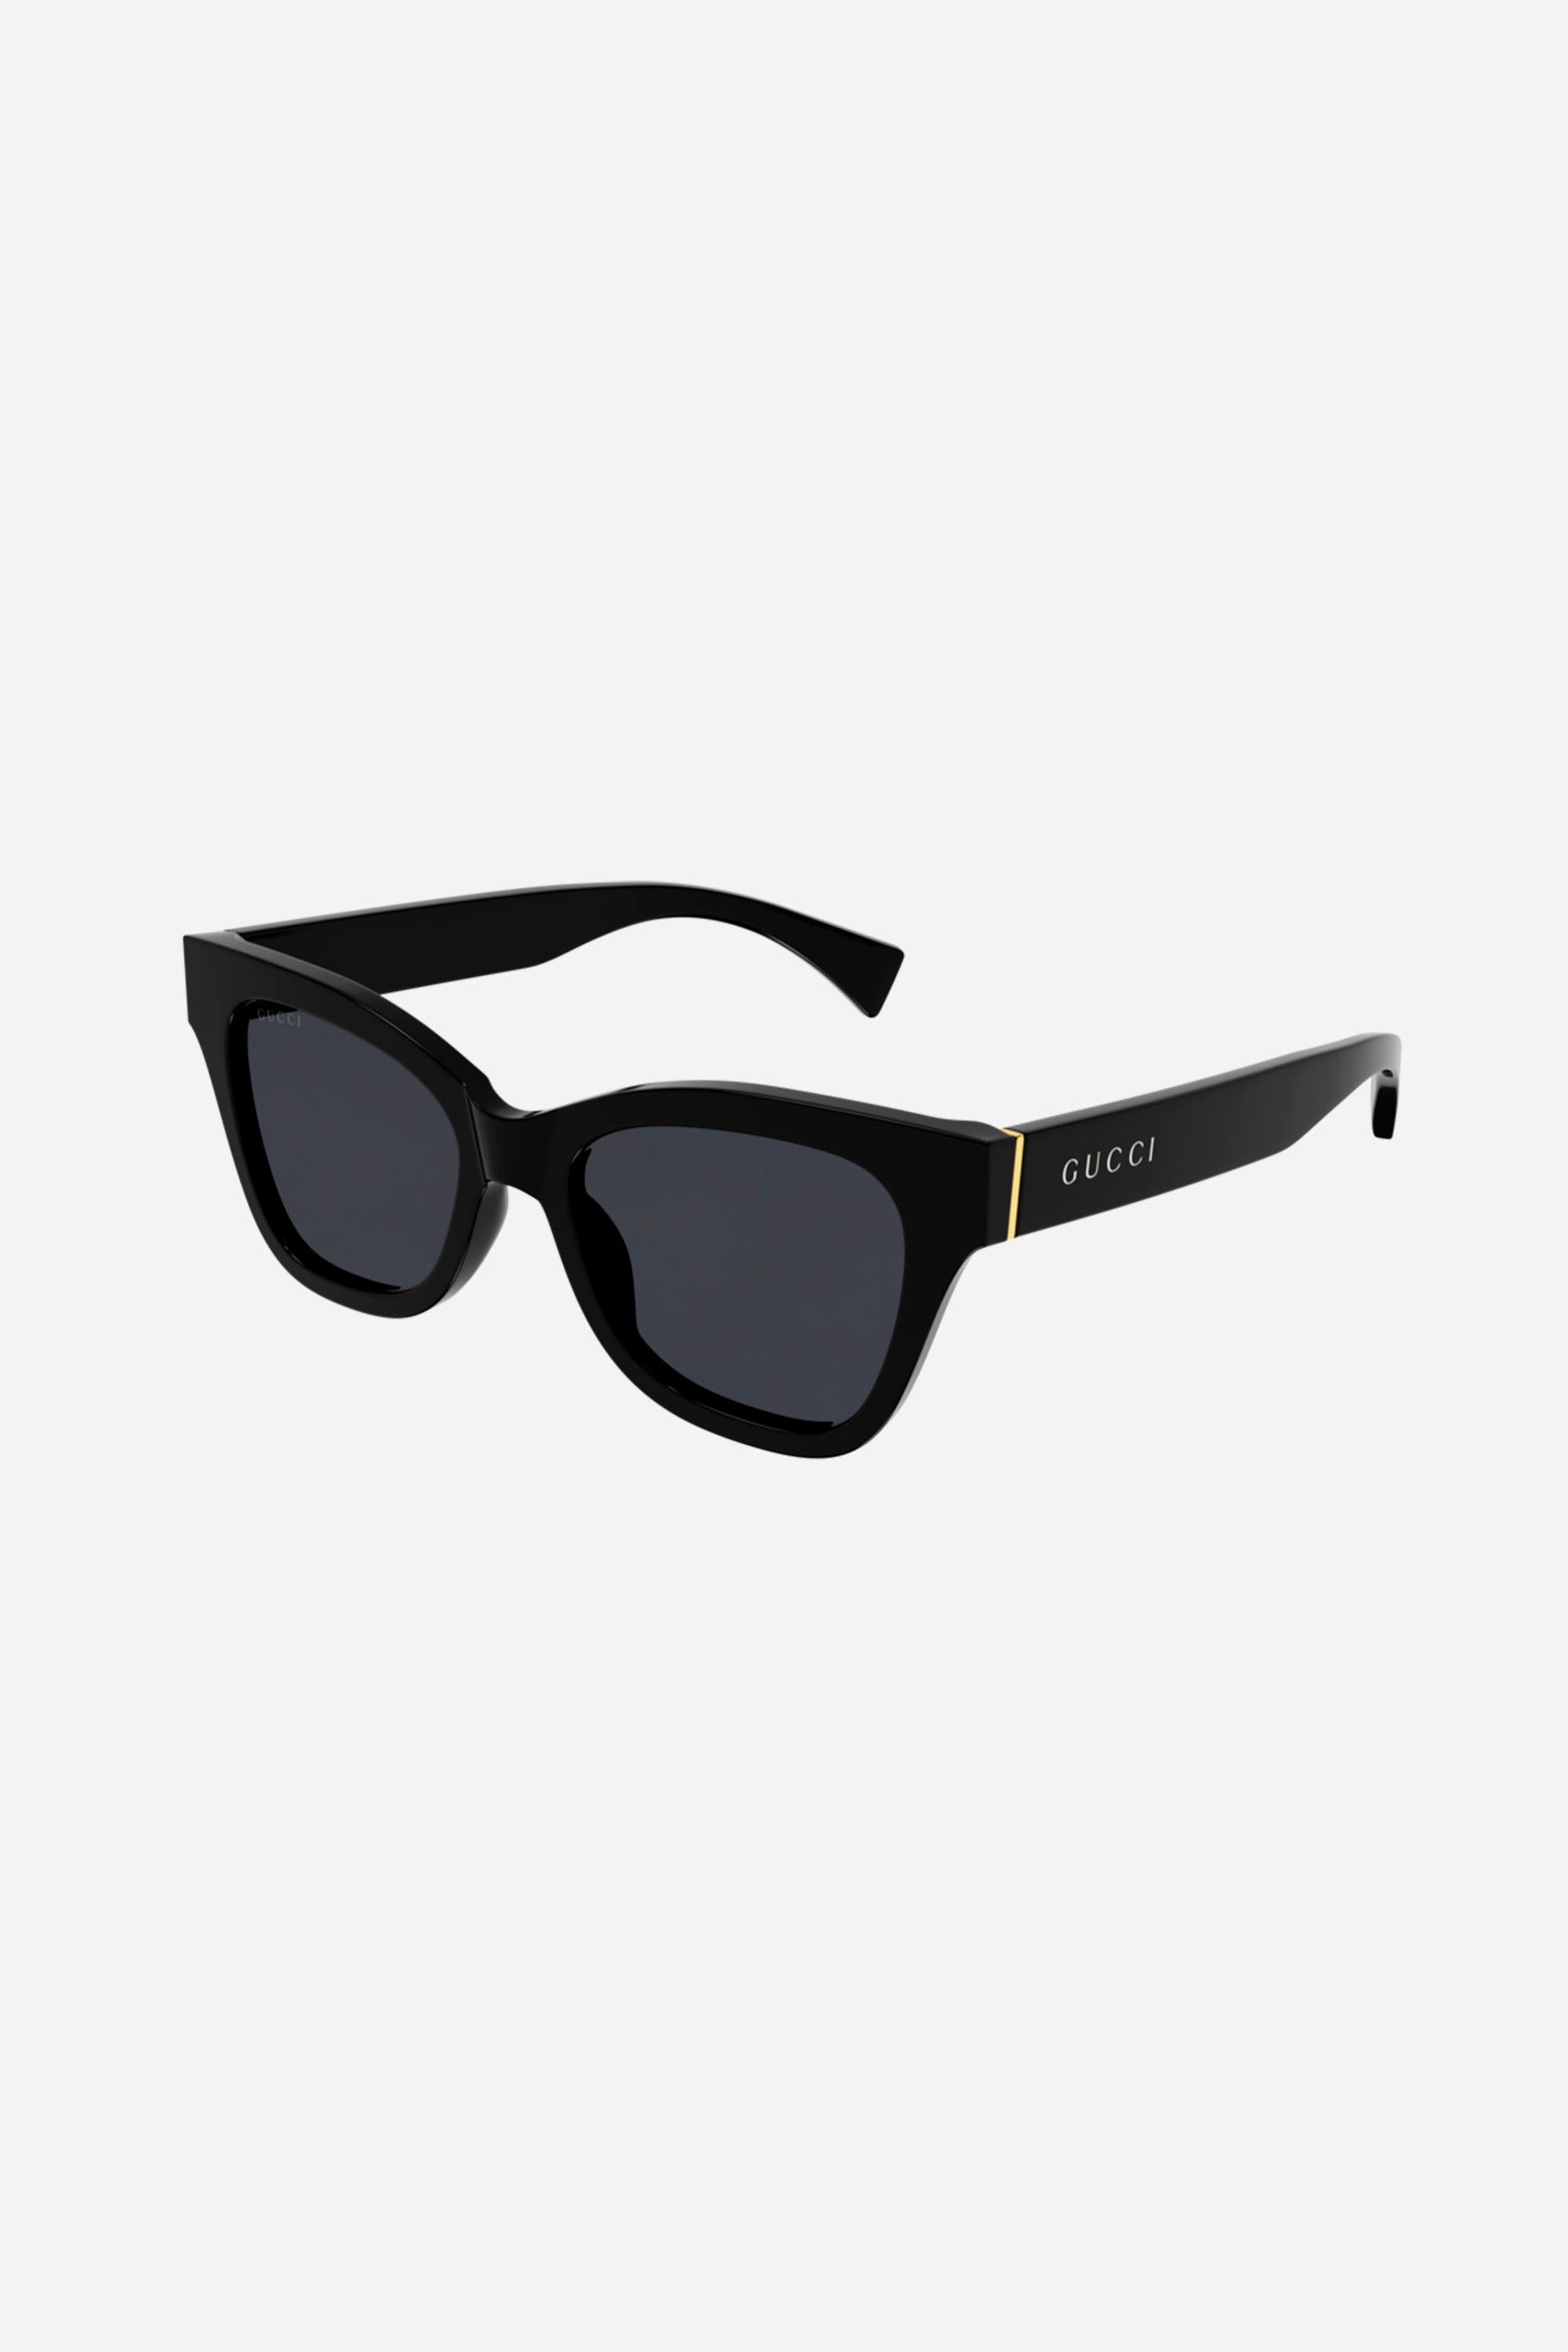 Gucci soft cat-eye black sunglasses - Eyewear Club